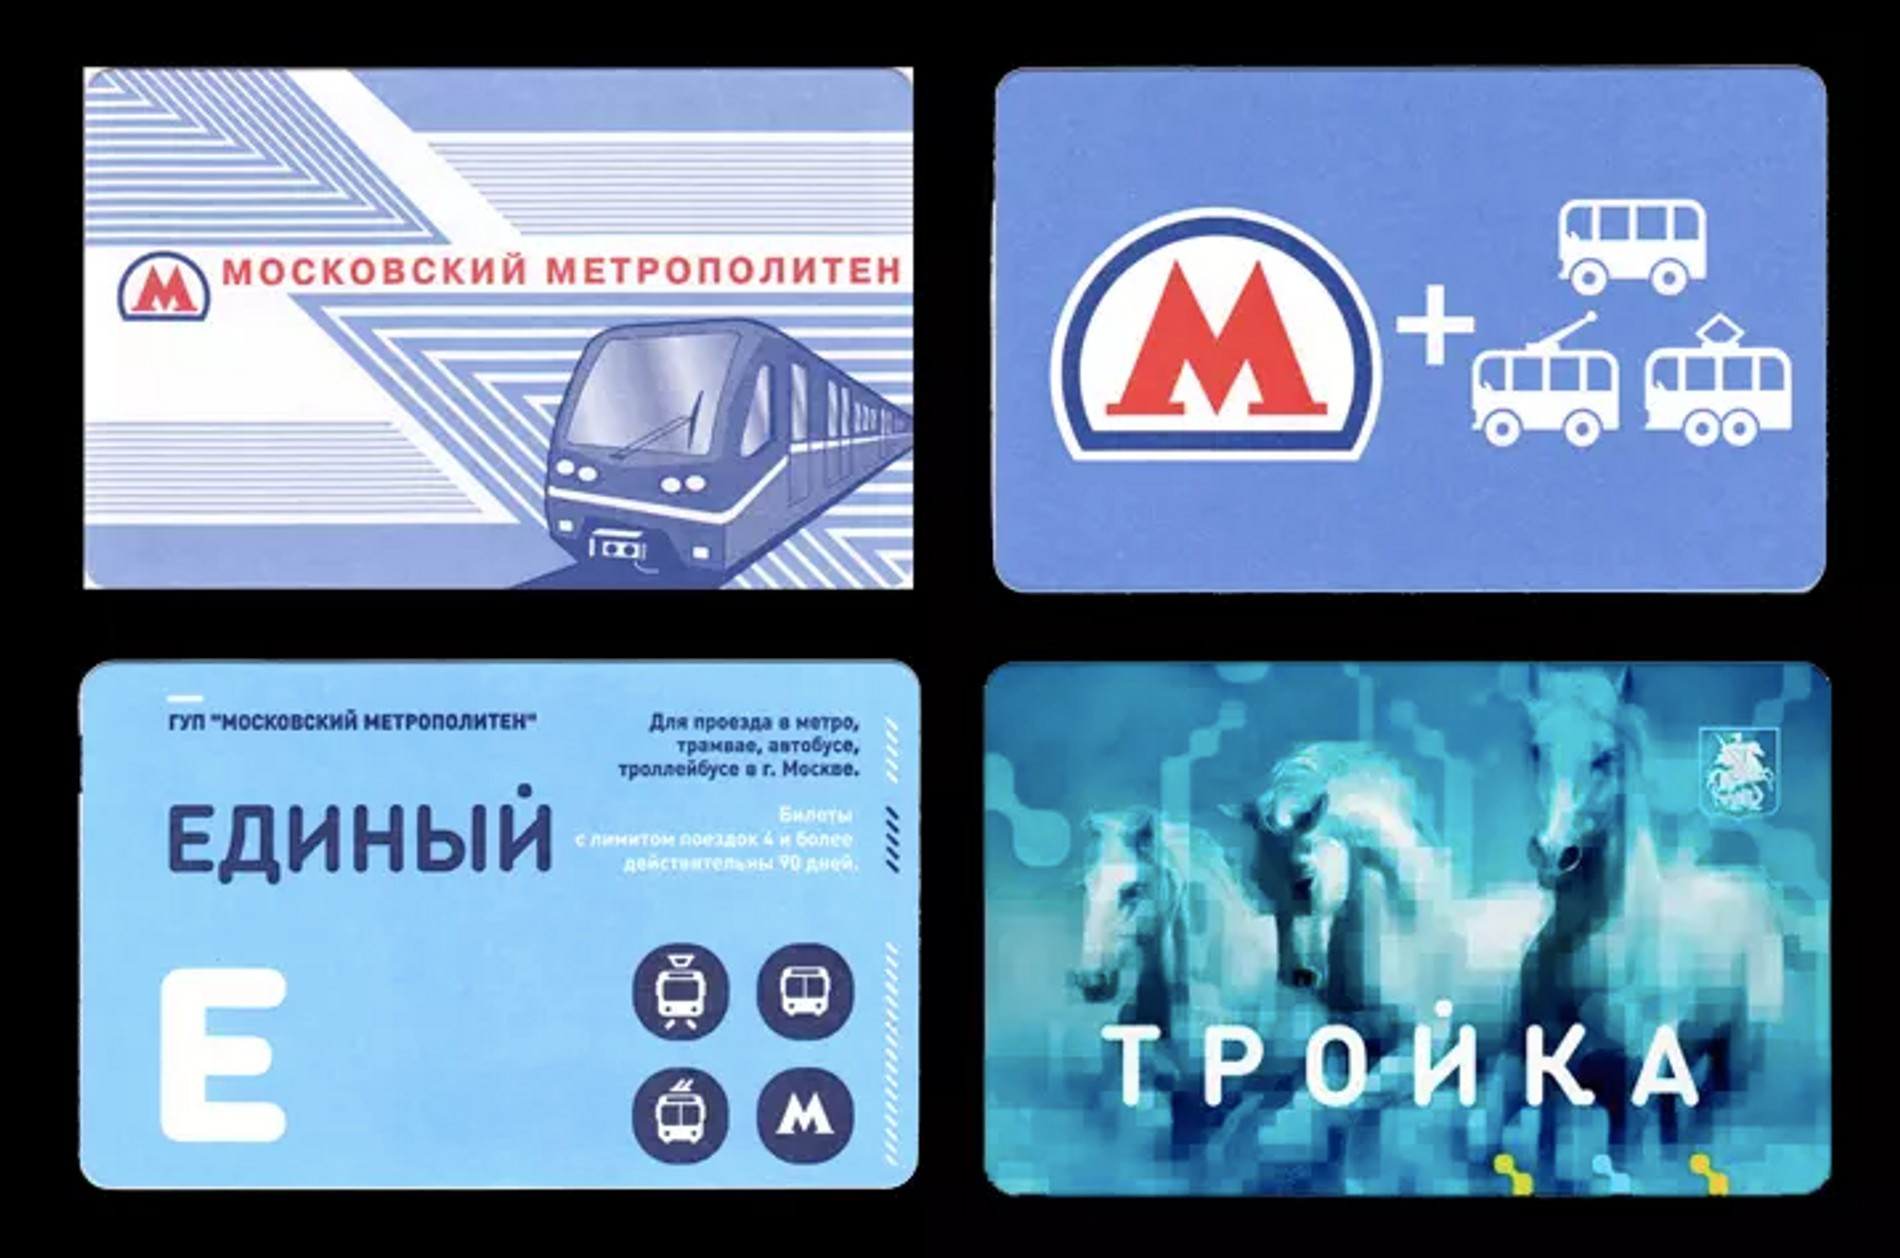 Современные проездные
Источник: metro.ru